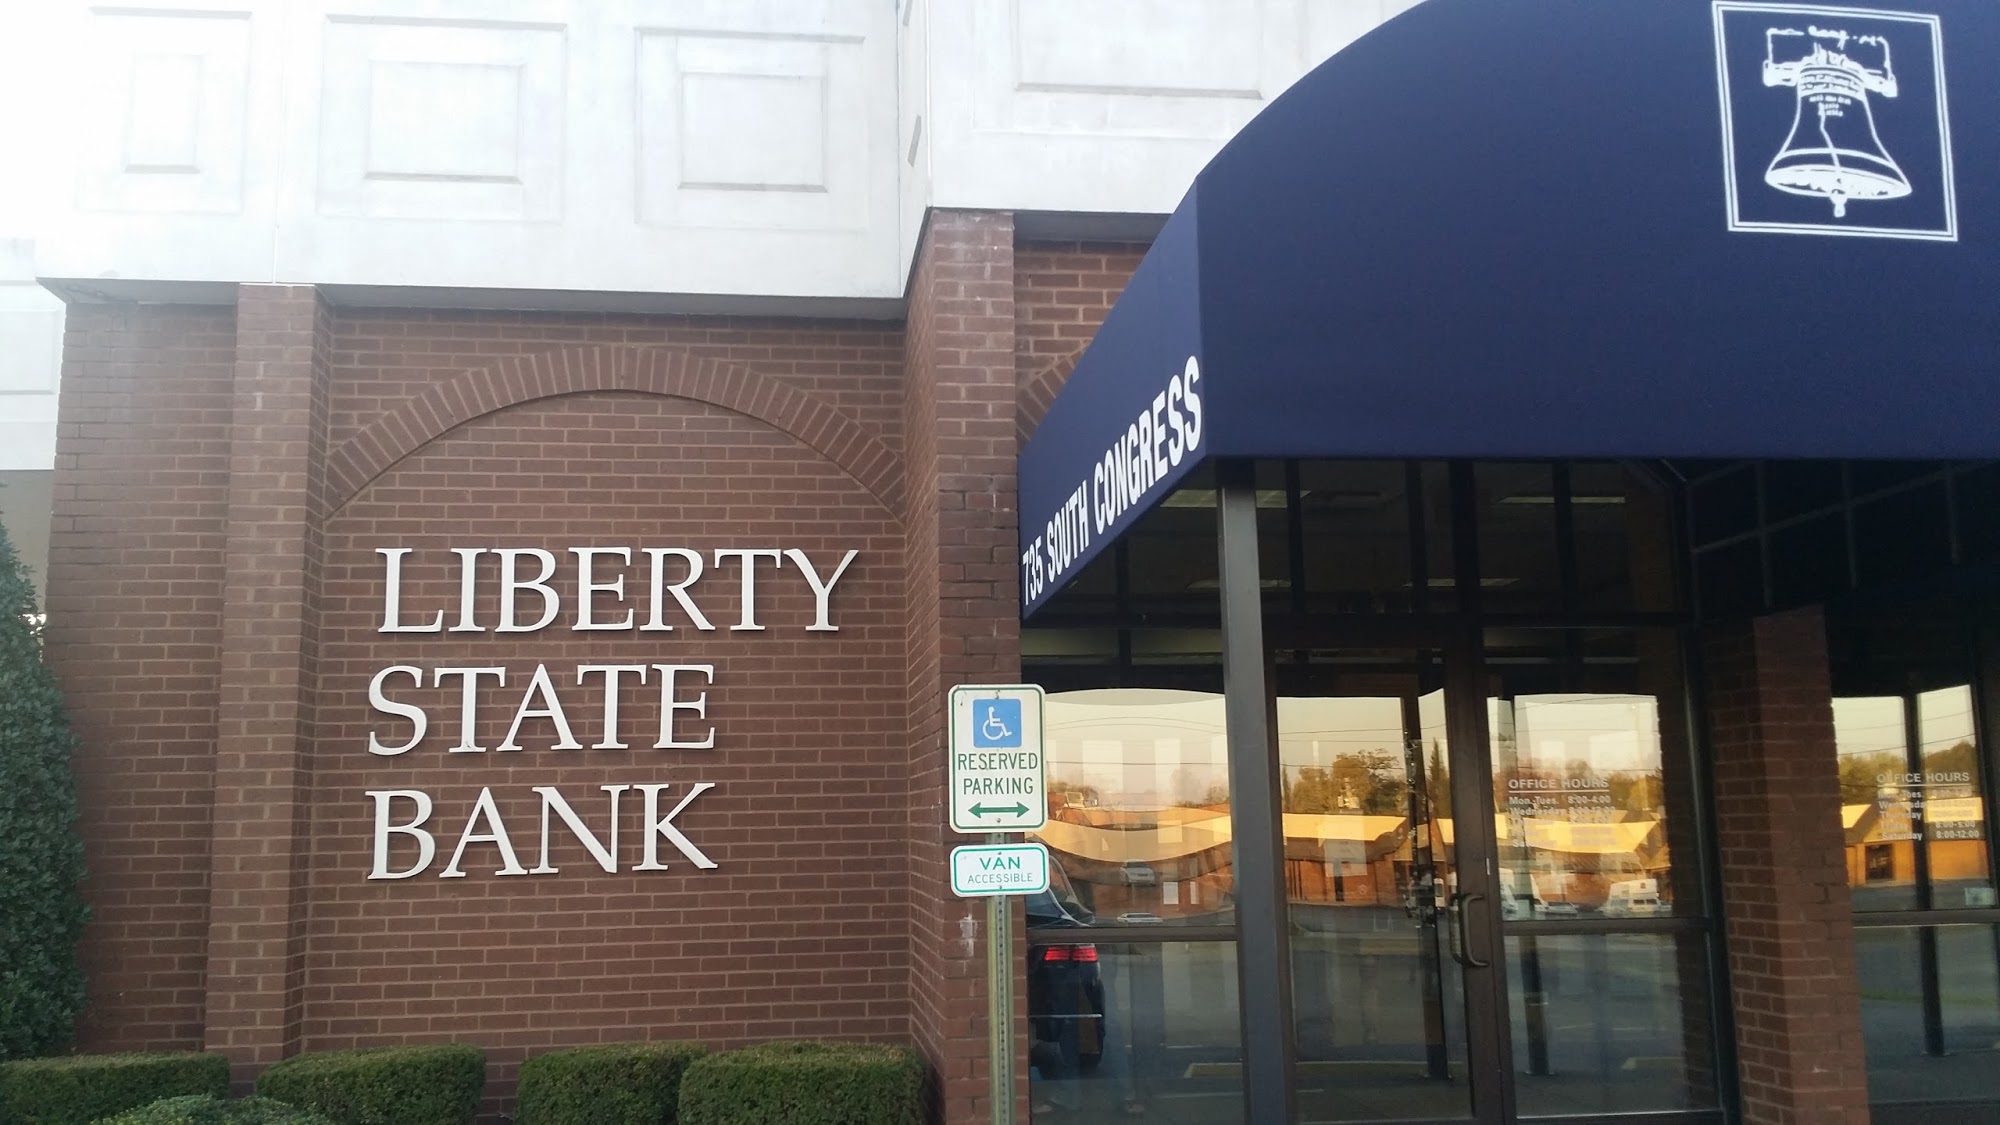 Liberty State Bank